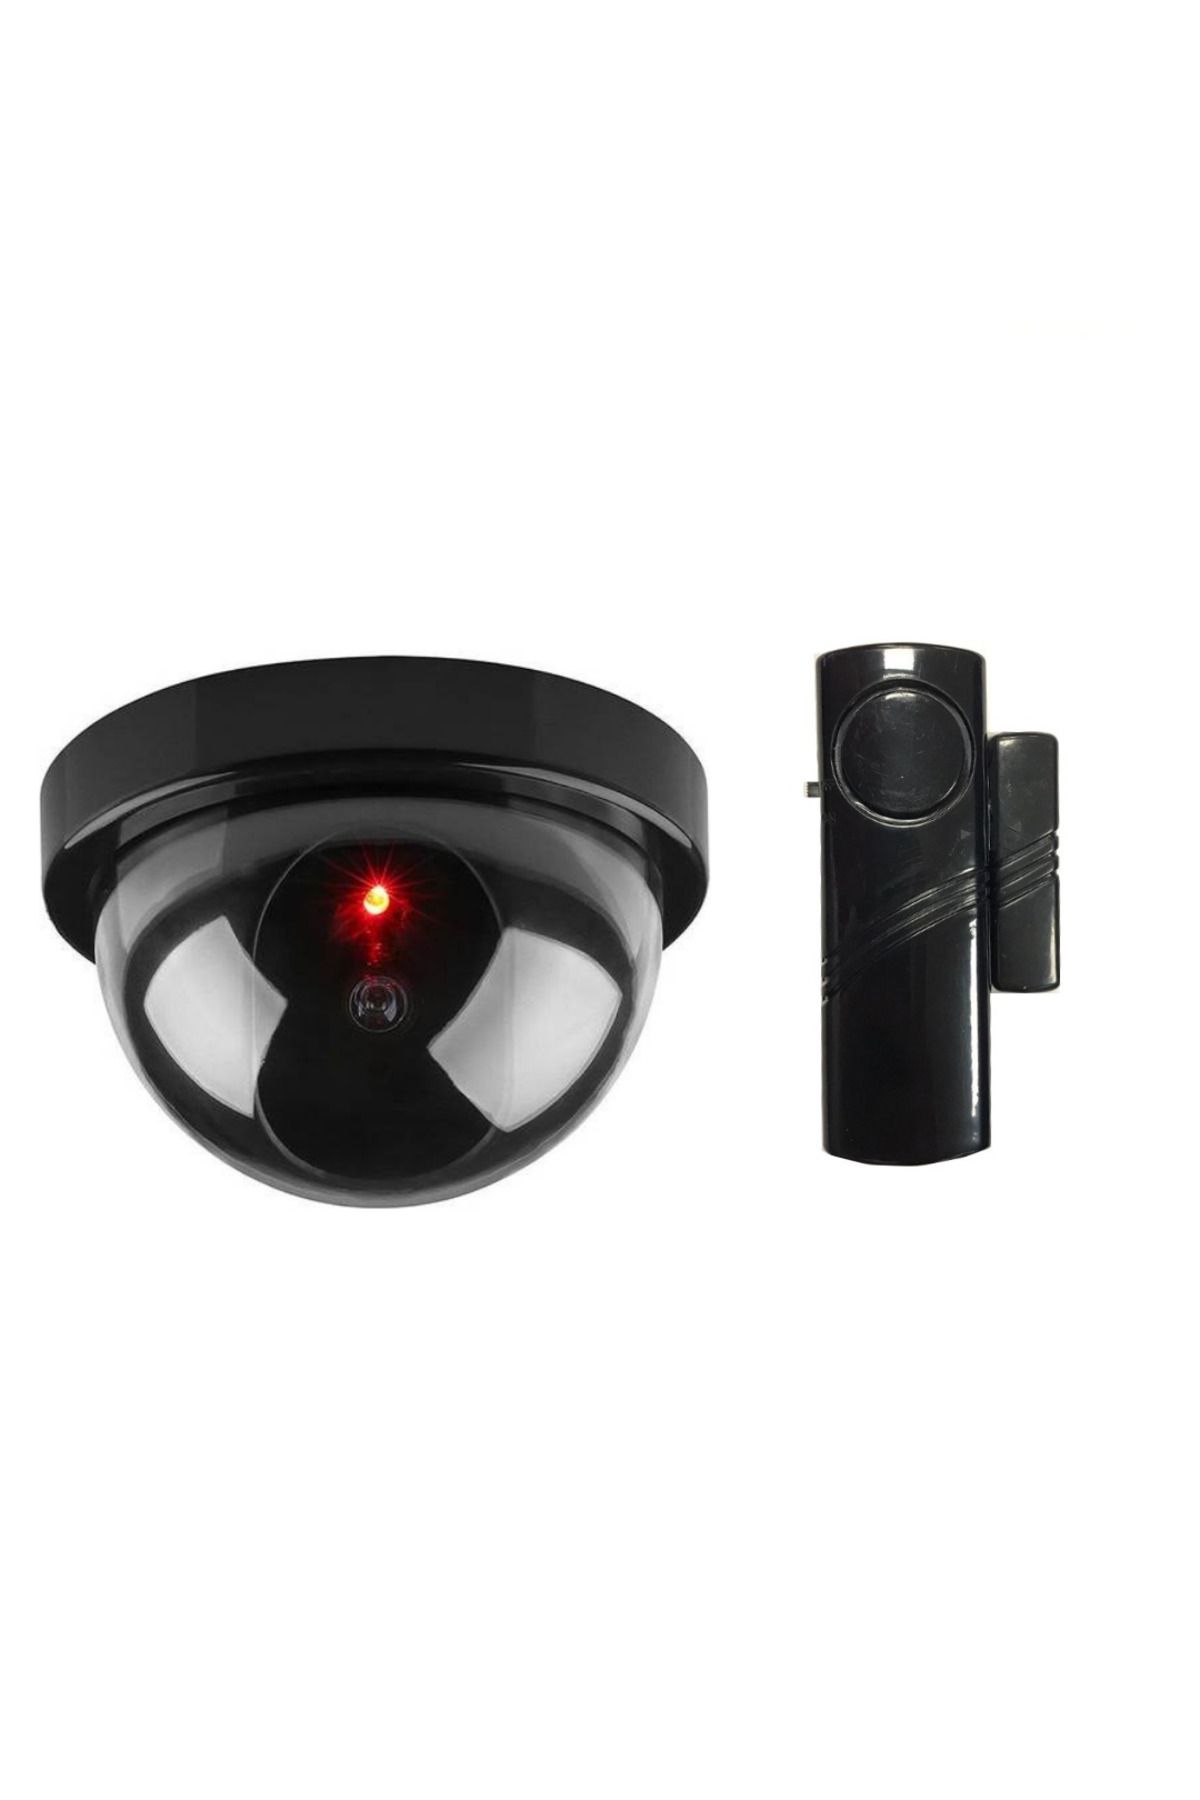 LOREX Güvenlikli Hırsız Alarm Set Lorex siyah kapı pencere ,Caydırıcı Dome Kamera LR-SK04-4444S